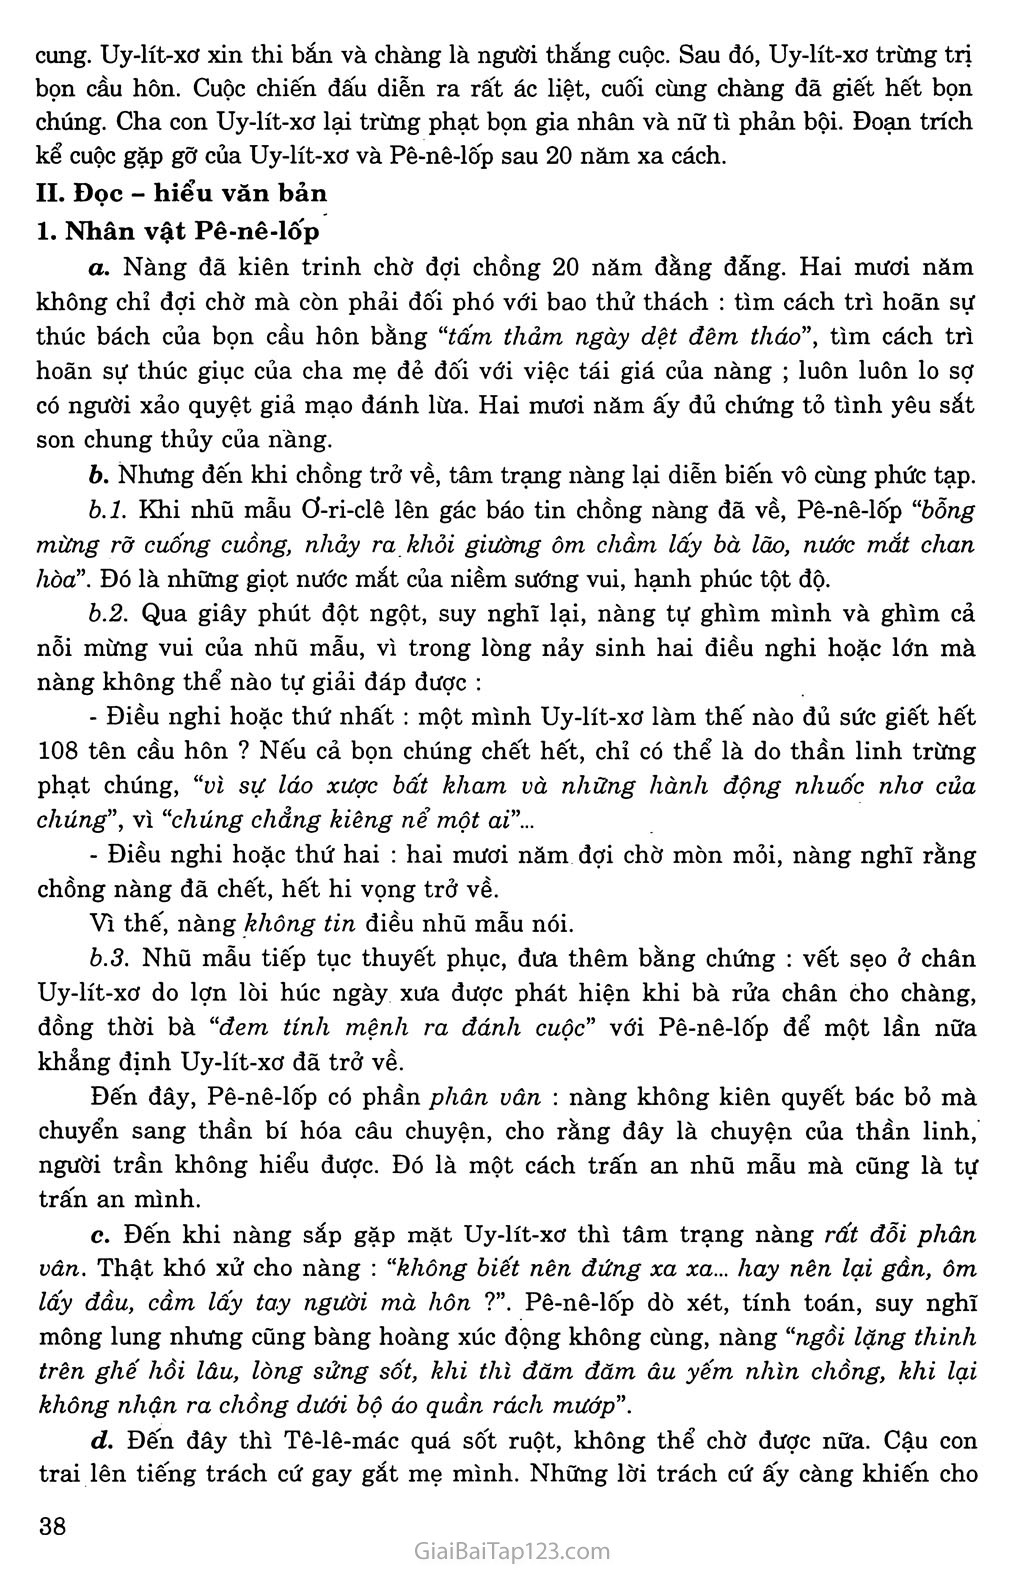 Uy - lít - xơ trở về (trích Ô - đi - xê - sử thi Hi Lạp) trang 2